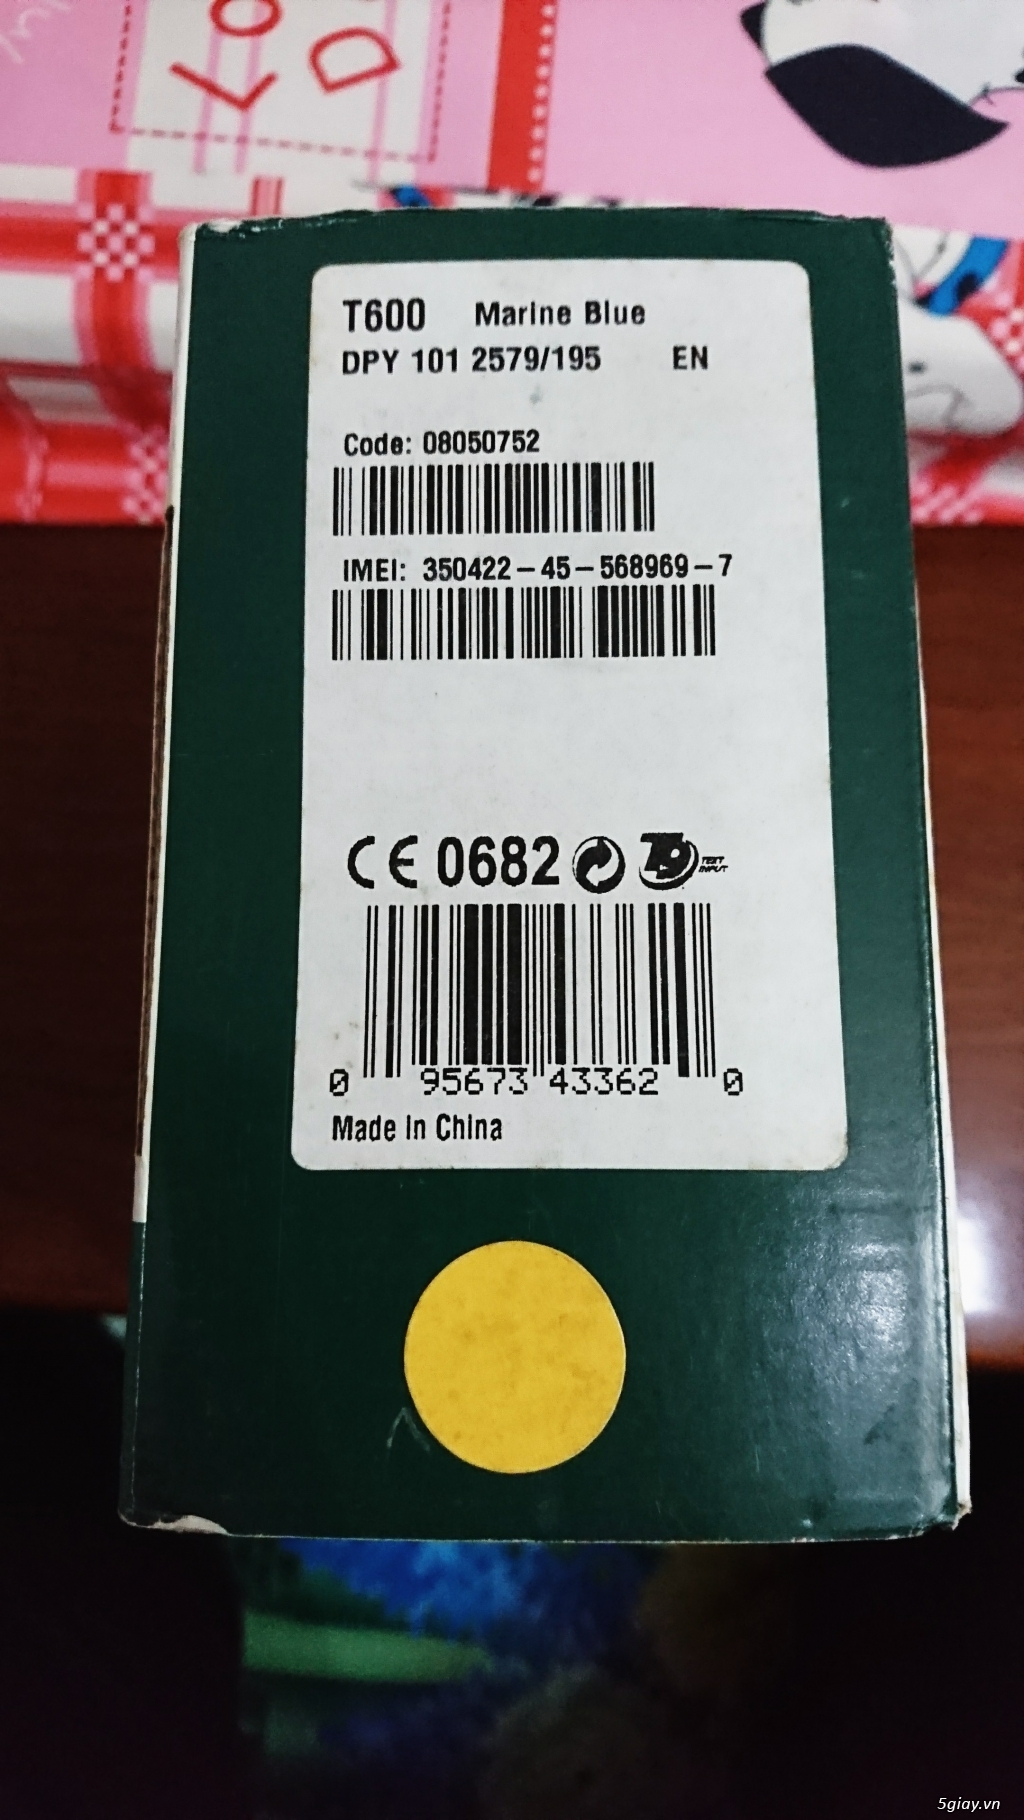 Sony ericsson T600 vị thần tí hon - fullbox new 99% - 2